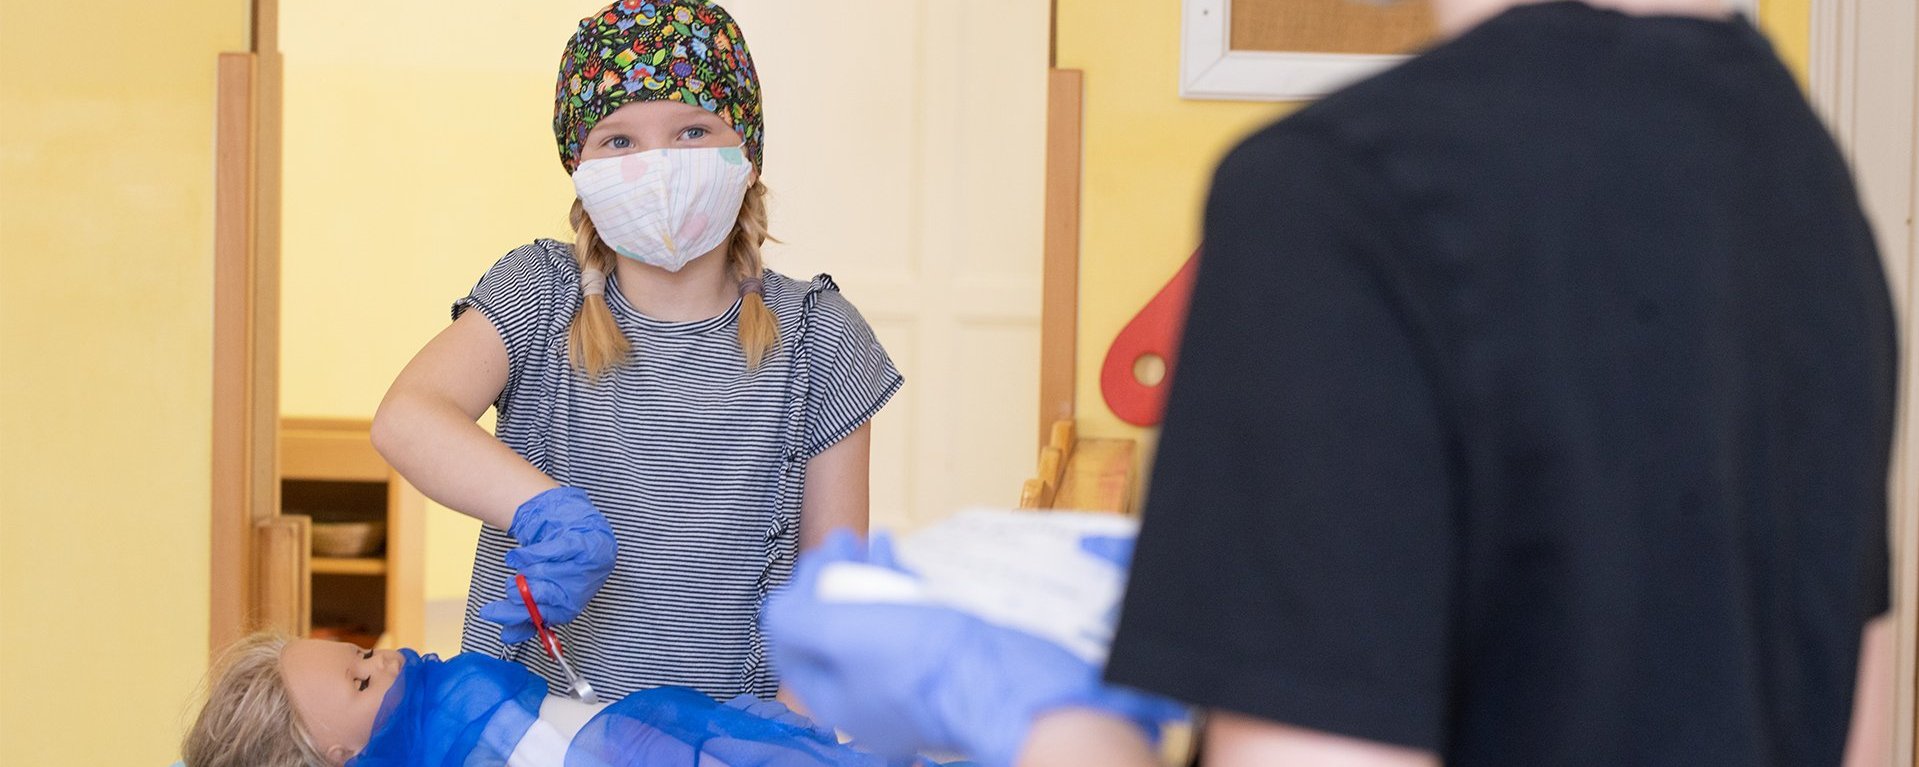 Ein Mädchen mit einer Arzthaube auf dem Kopf und einem Mundschutz operiert mit Spielzeug eine Puppe die vor ihr, mit einem Tuch abgedeckt, auf dem Tisch liegt. Das Mädchen schaut ein Kind an, welches ihr gegenüber steht.